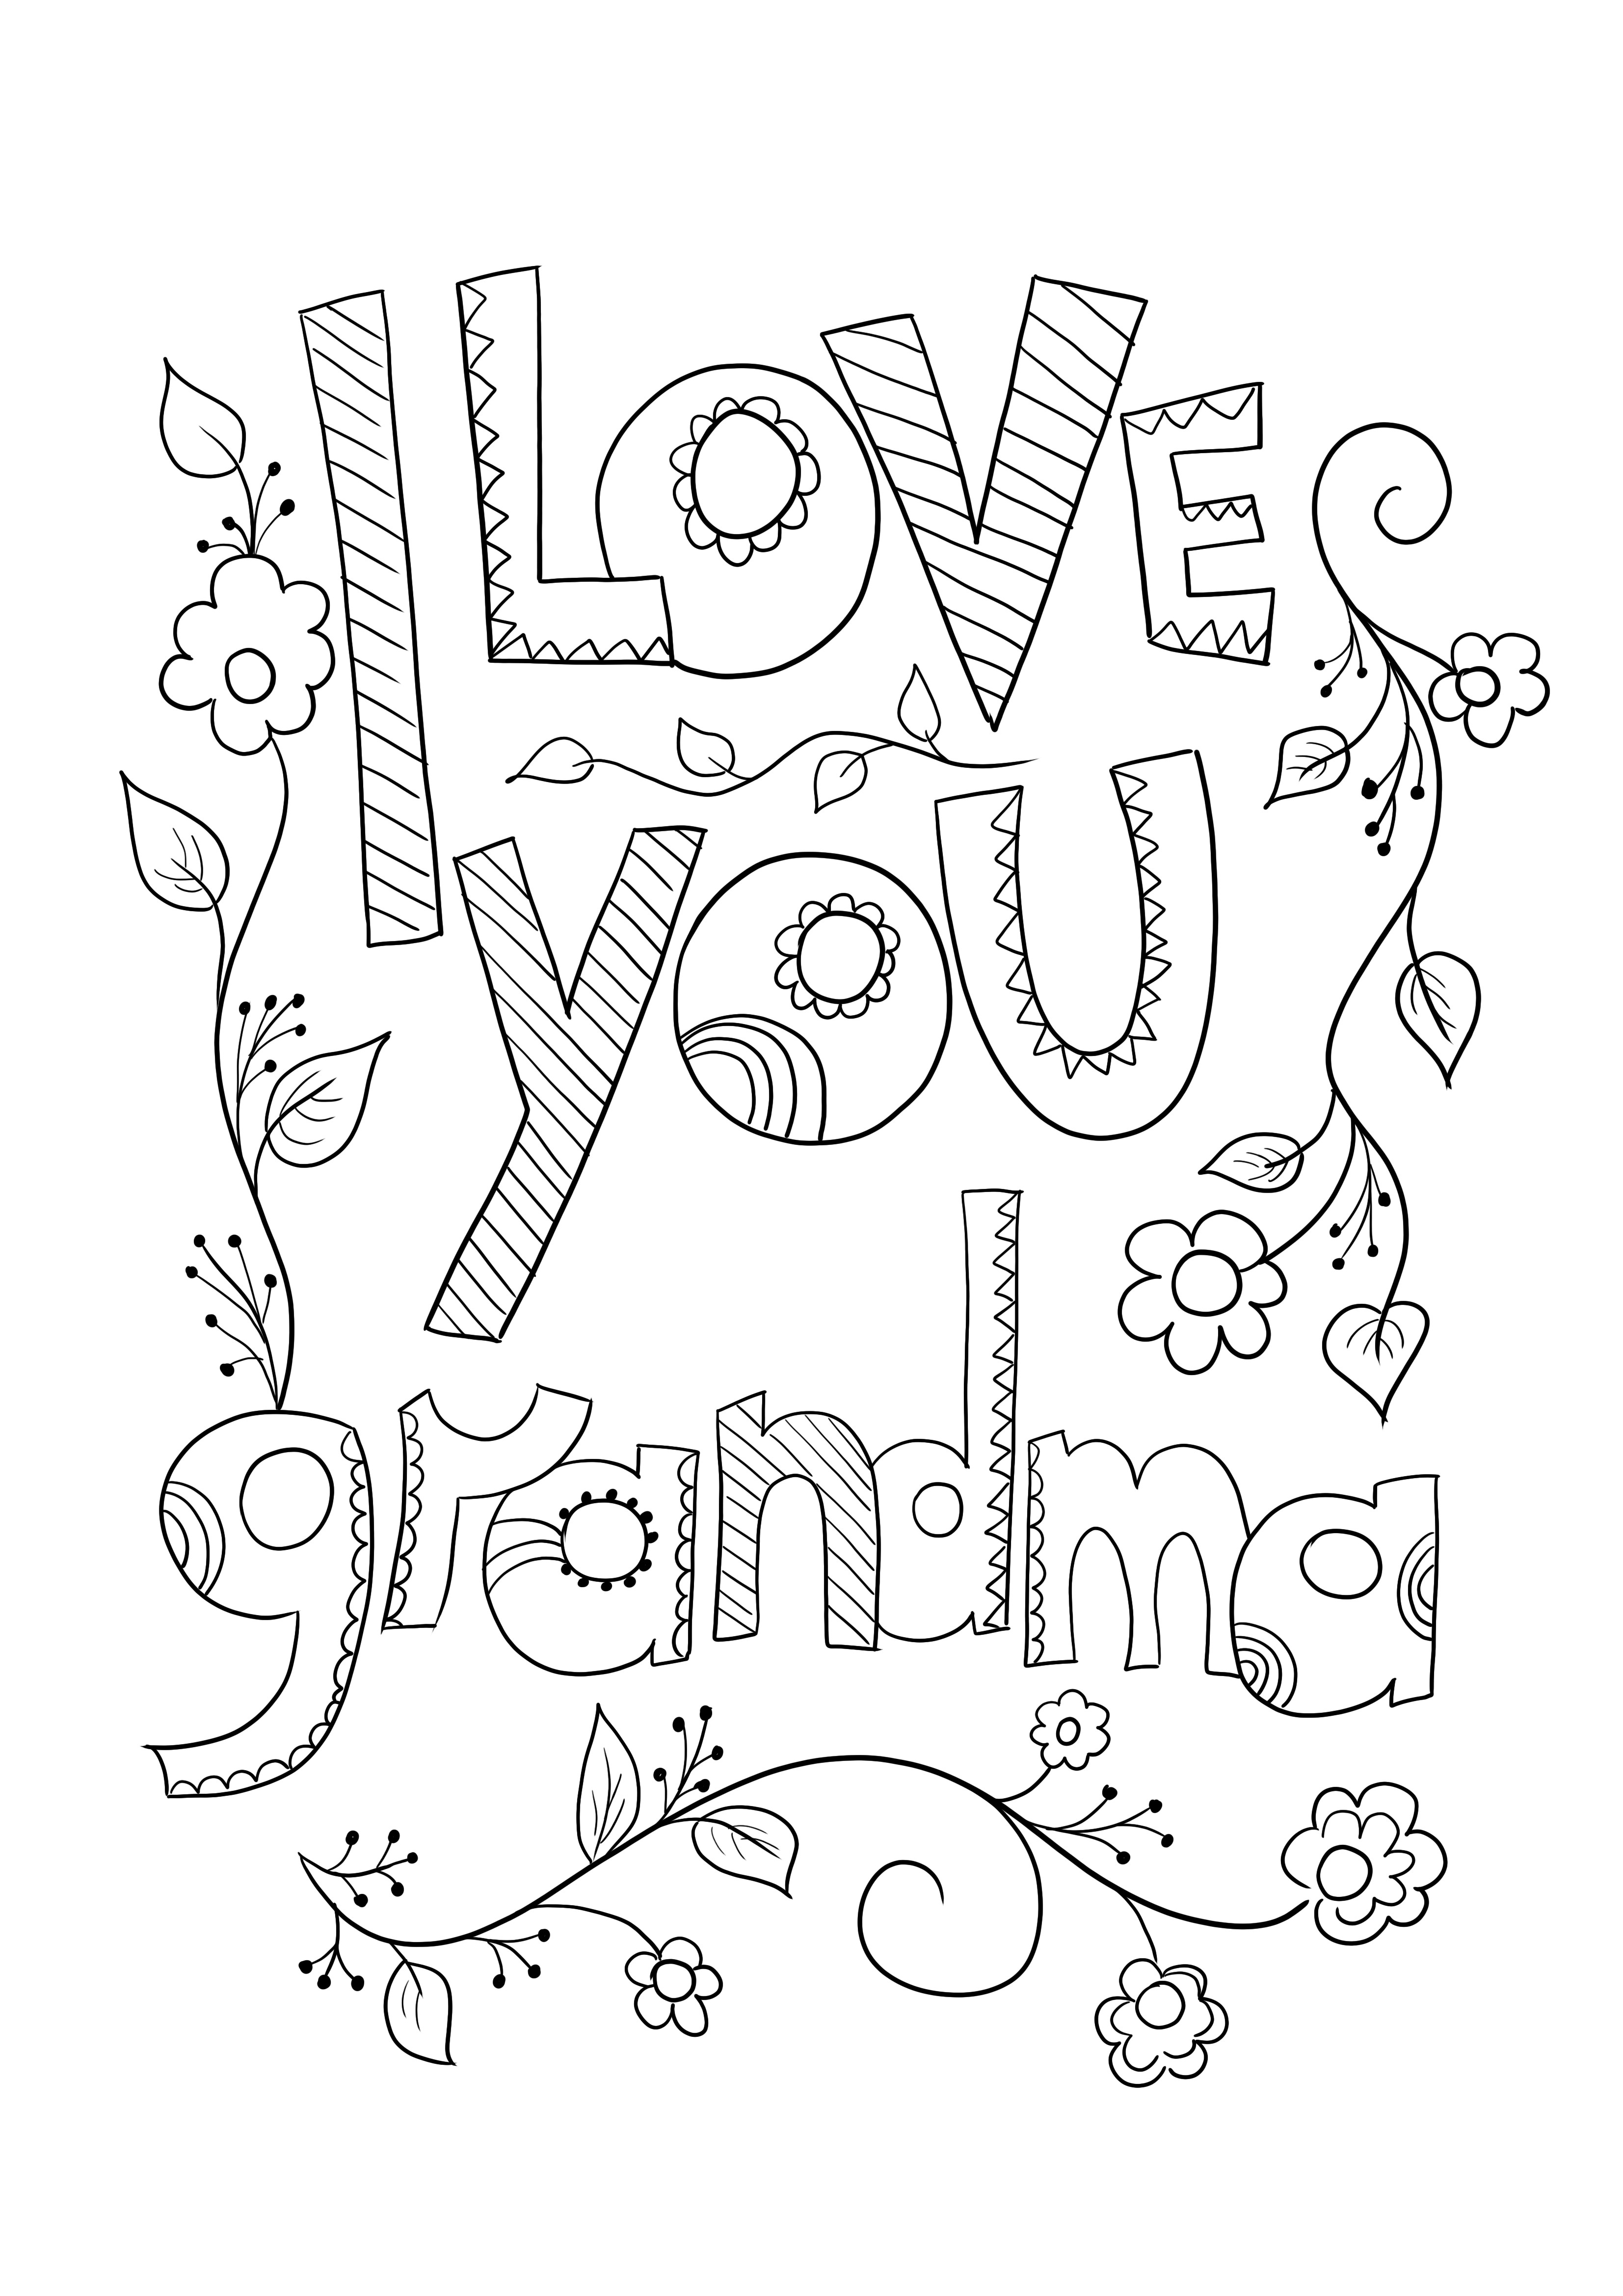 Image à colorier de la carte d'anniversaire de grand-mère à imprimer gratuitement